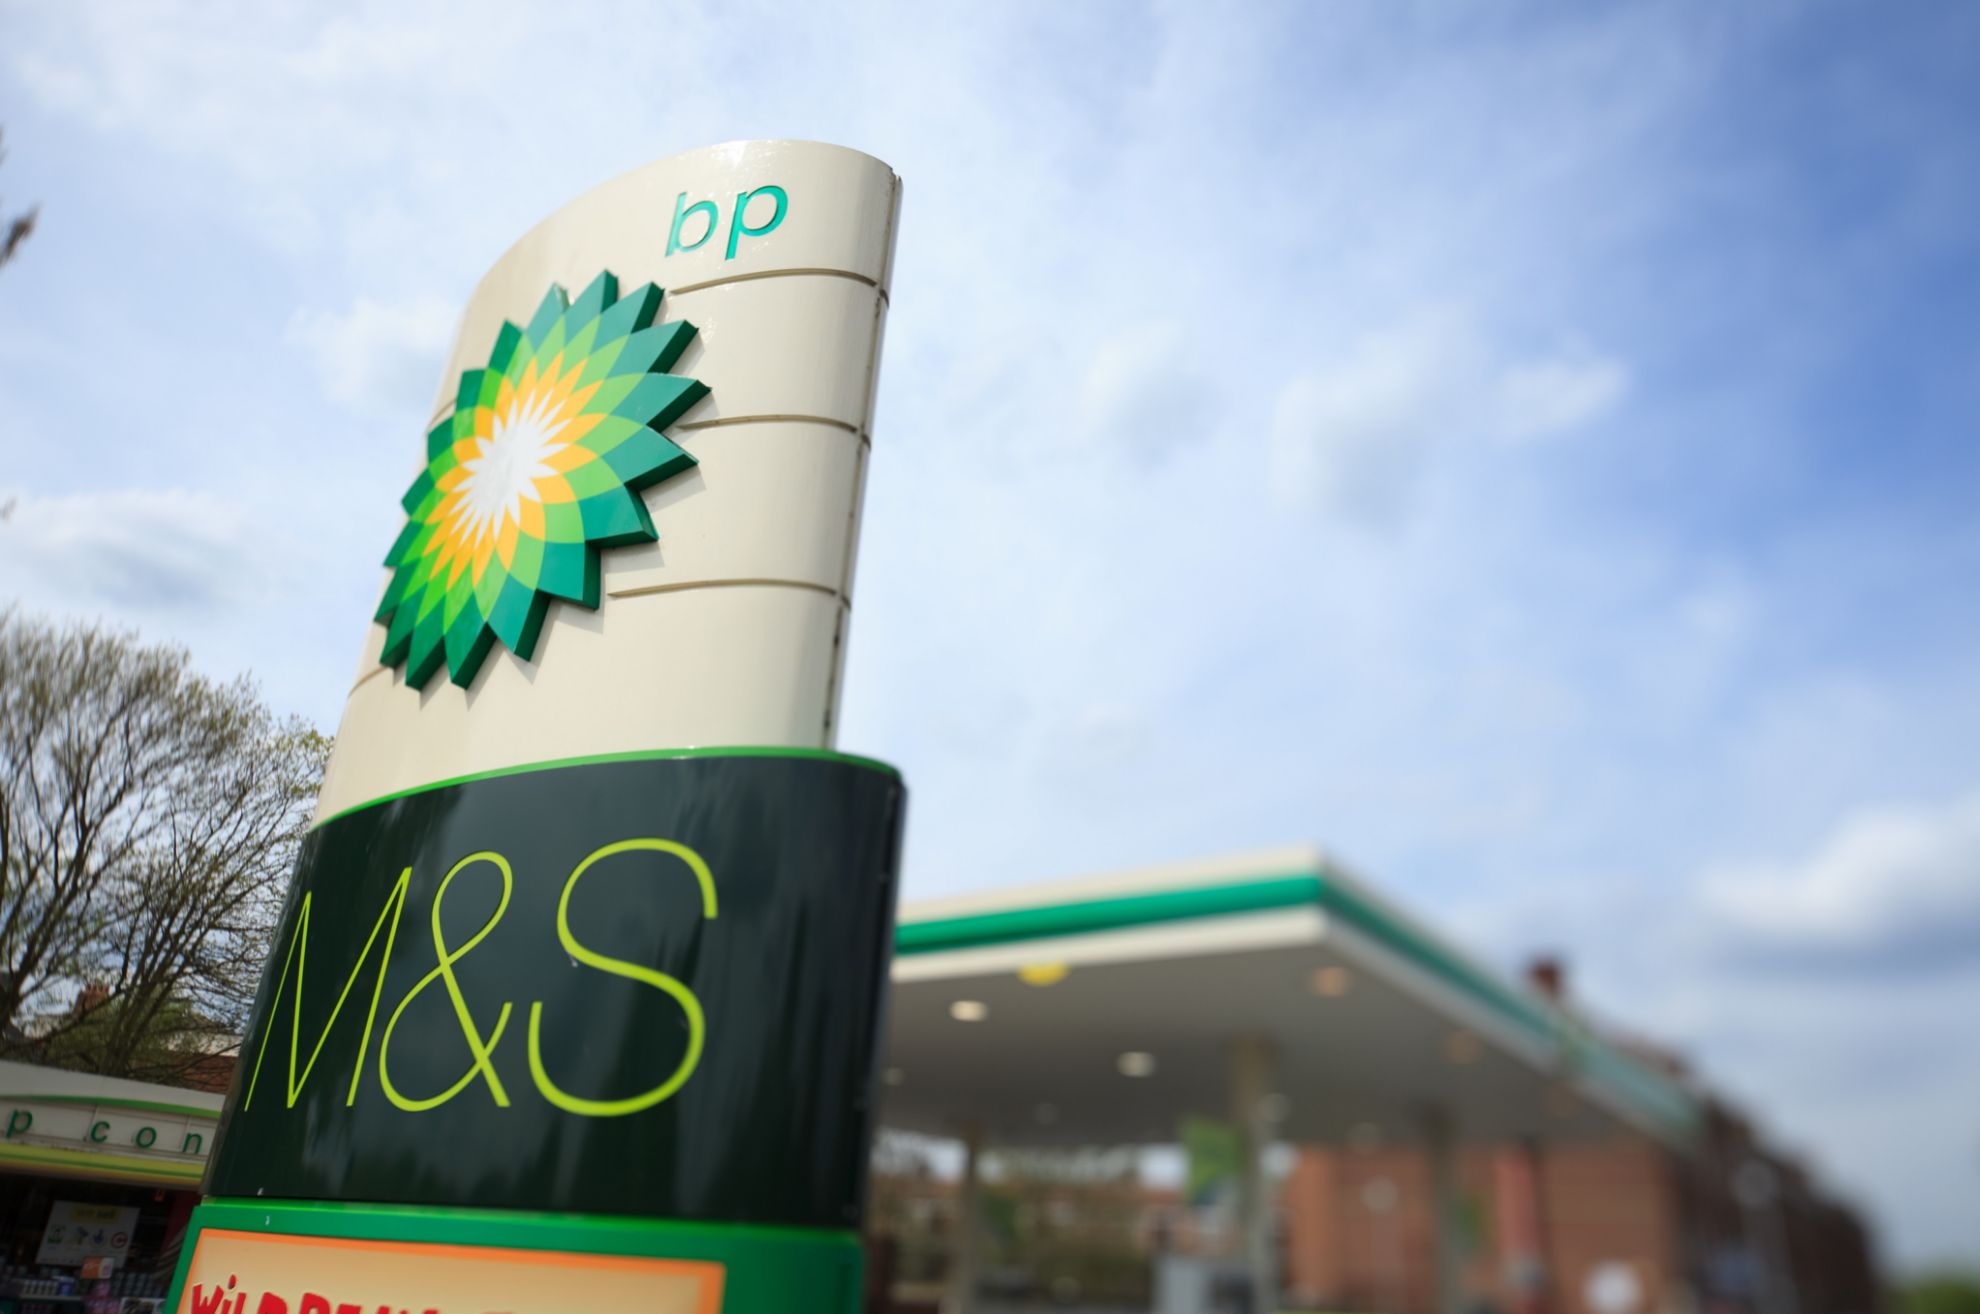 BP - descuento en gasolina - descuento en diesel - descuento en combustible - 12 centimos de descuento